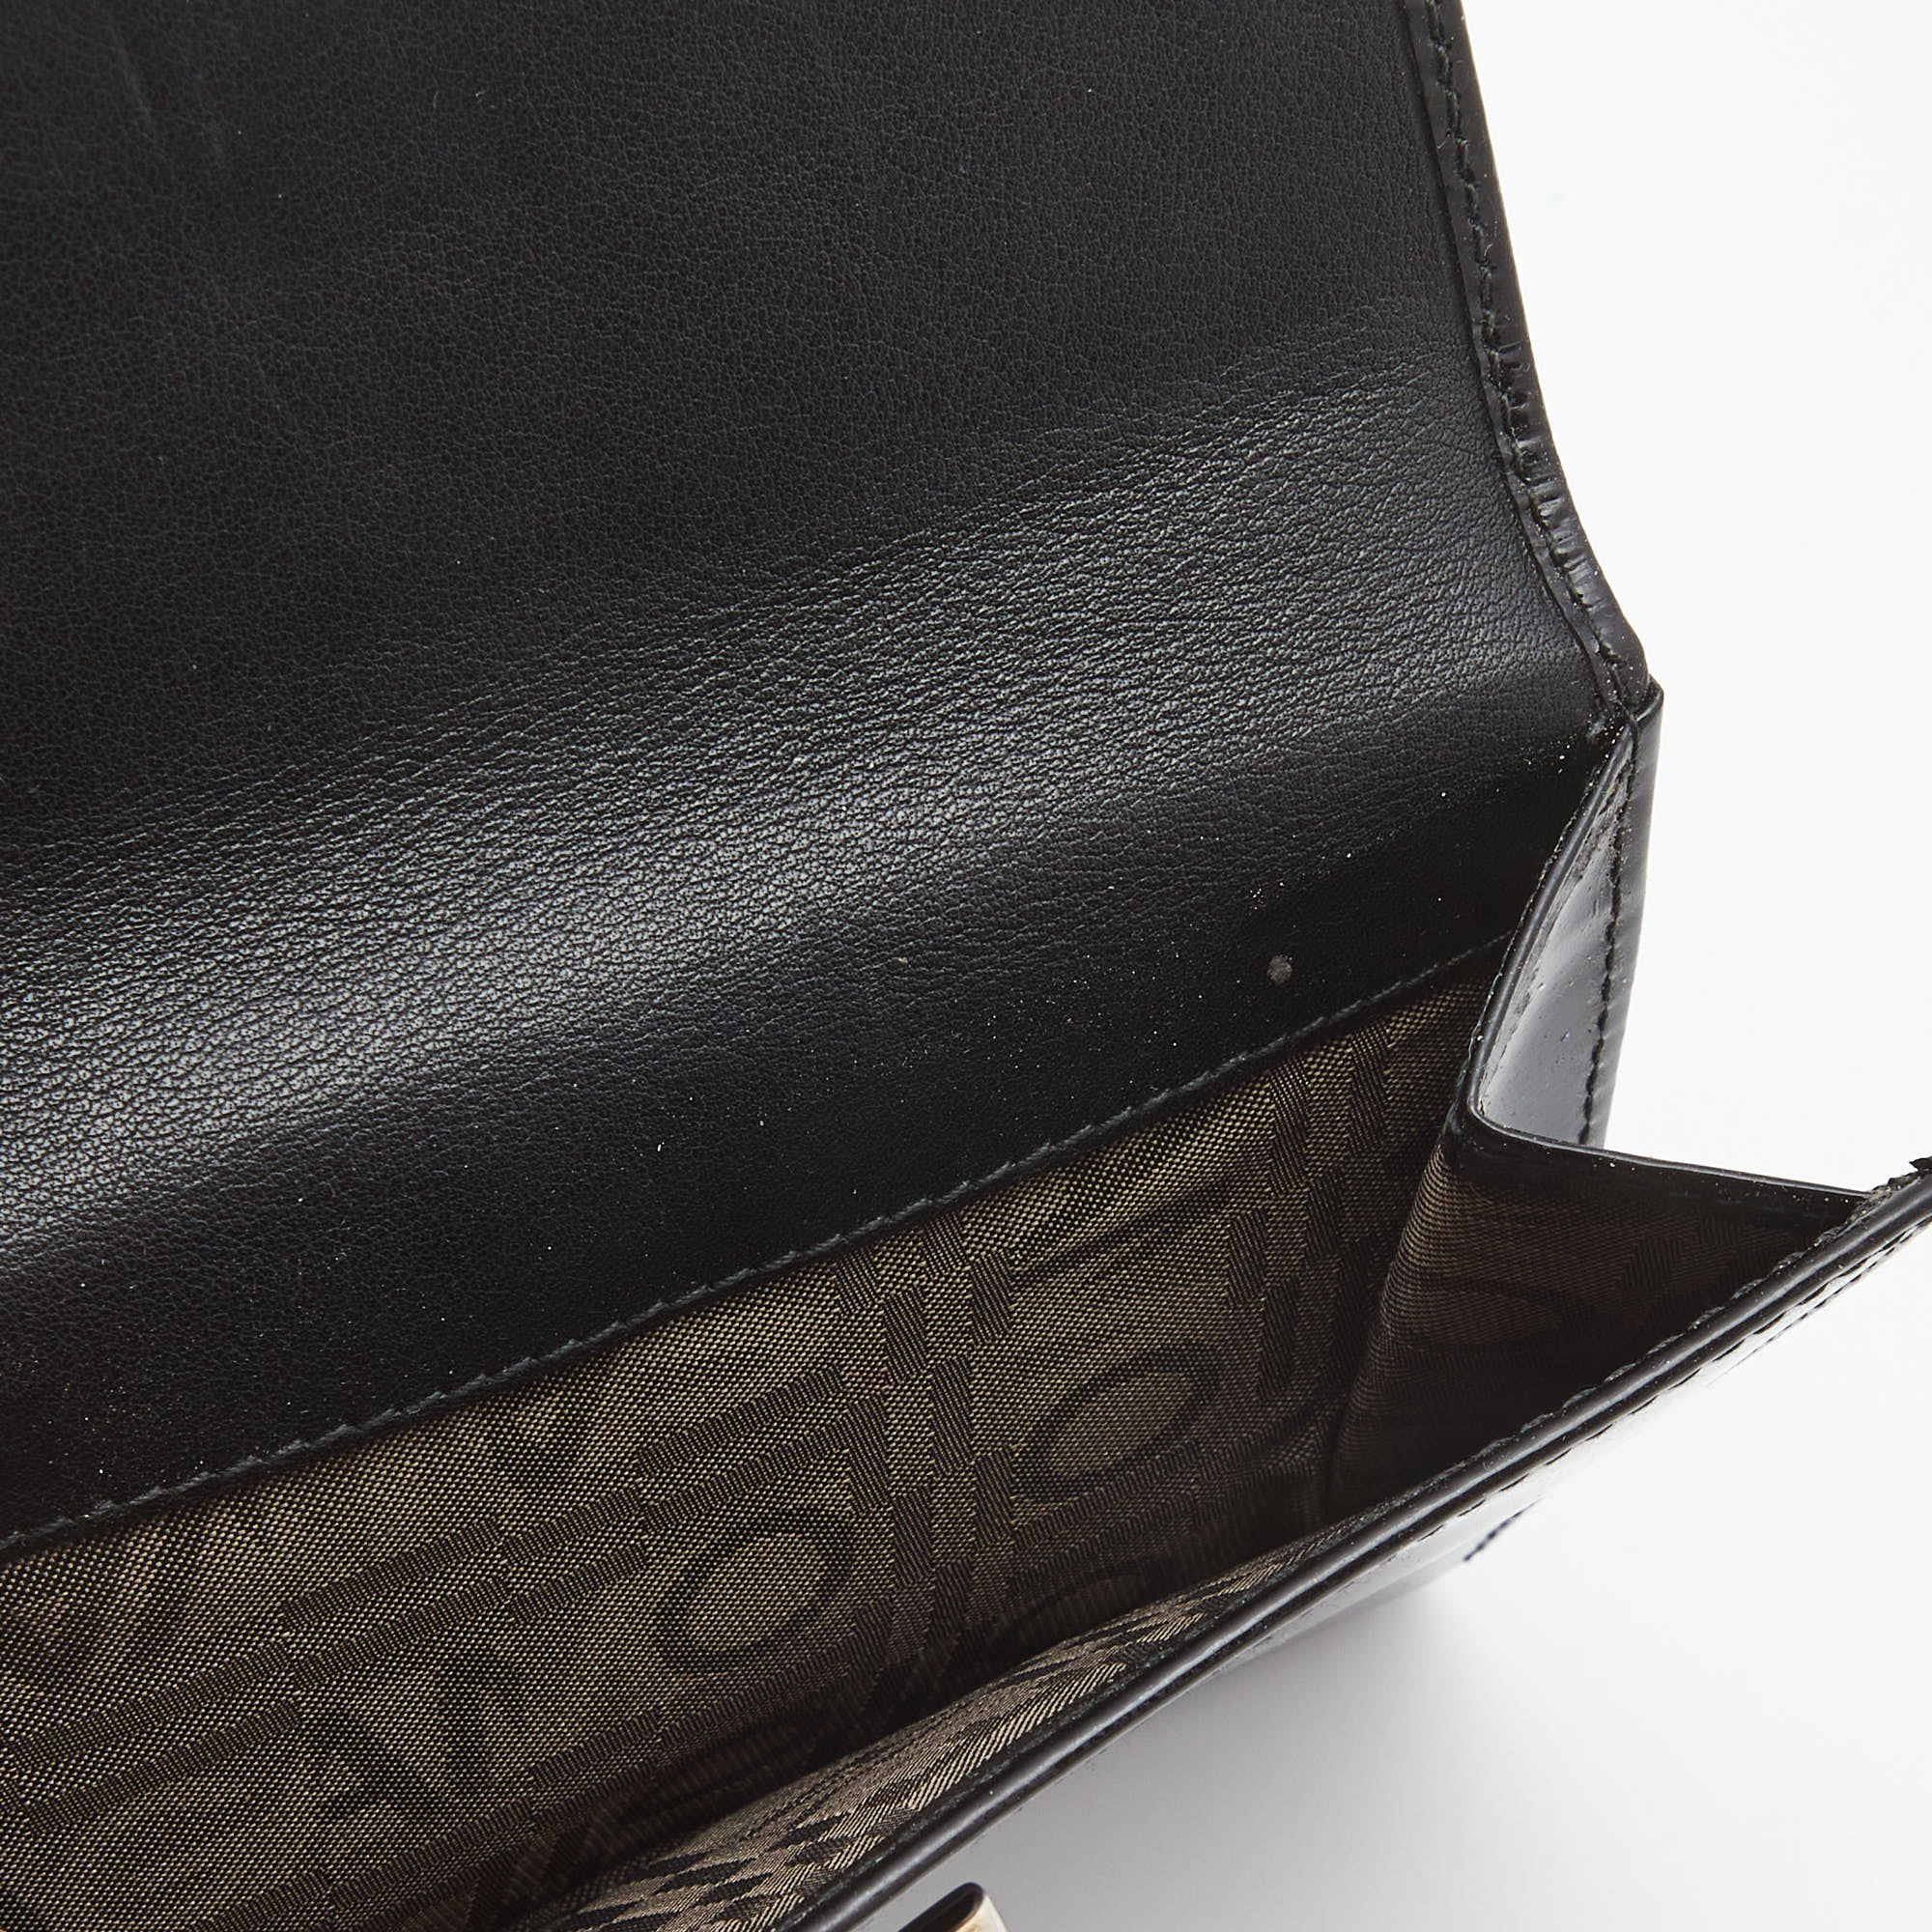 Salvatore Ferragamo Black Patent Leather Gancini Tri Fold Wallet